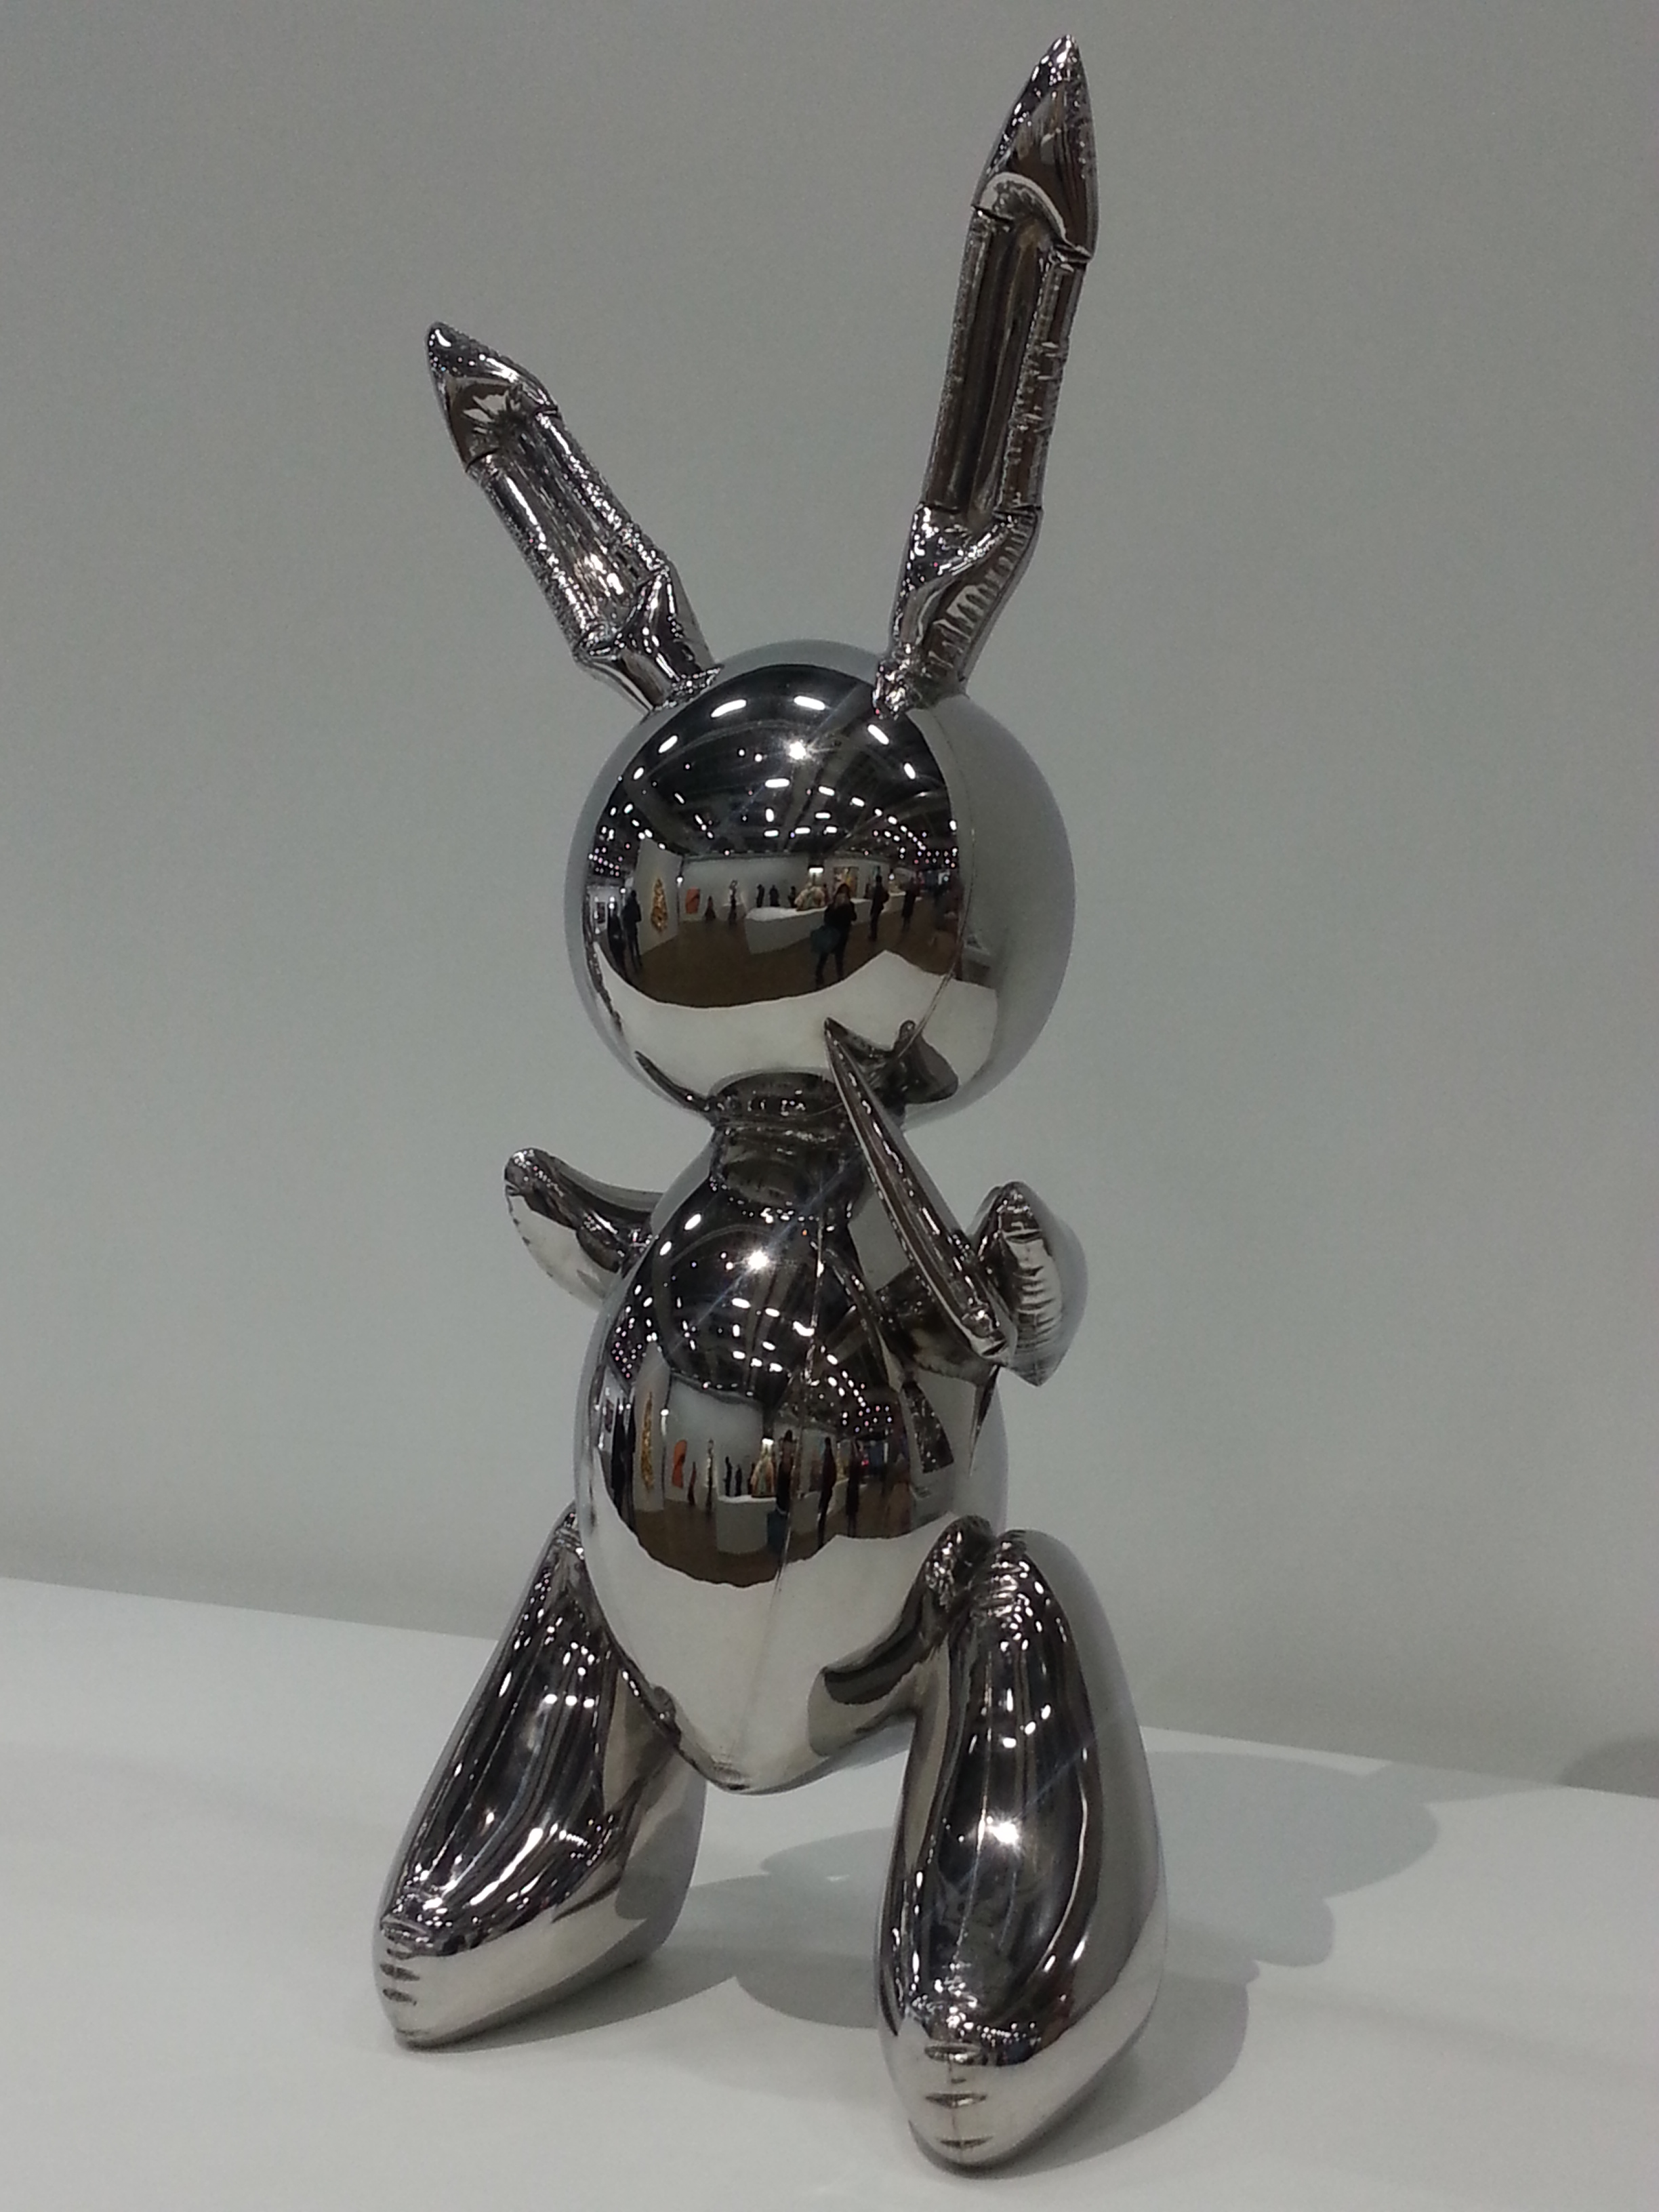 “Rabbit”, 1986